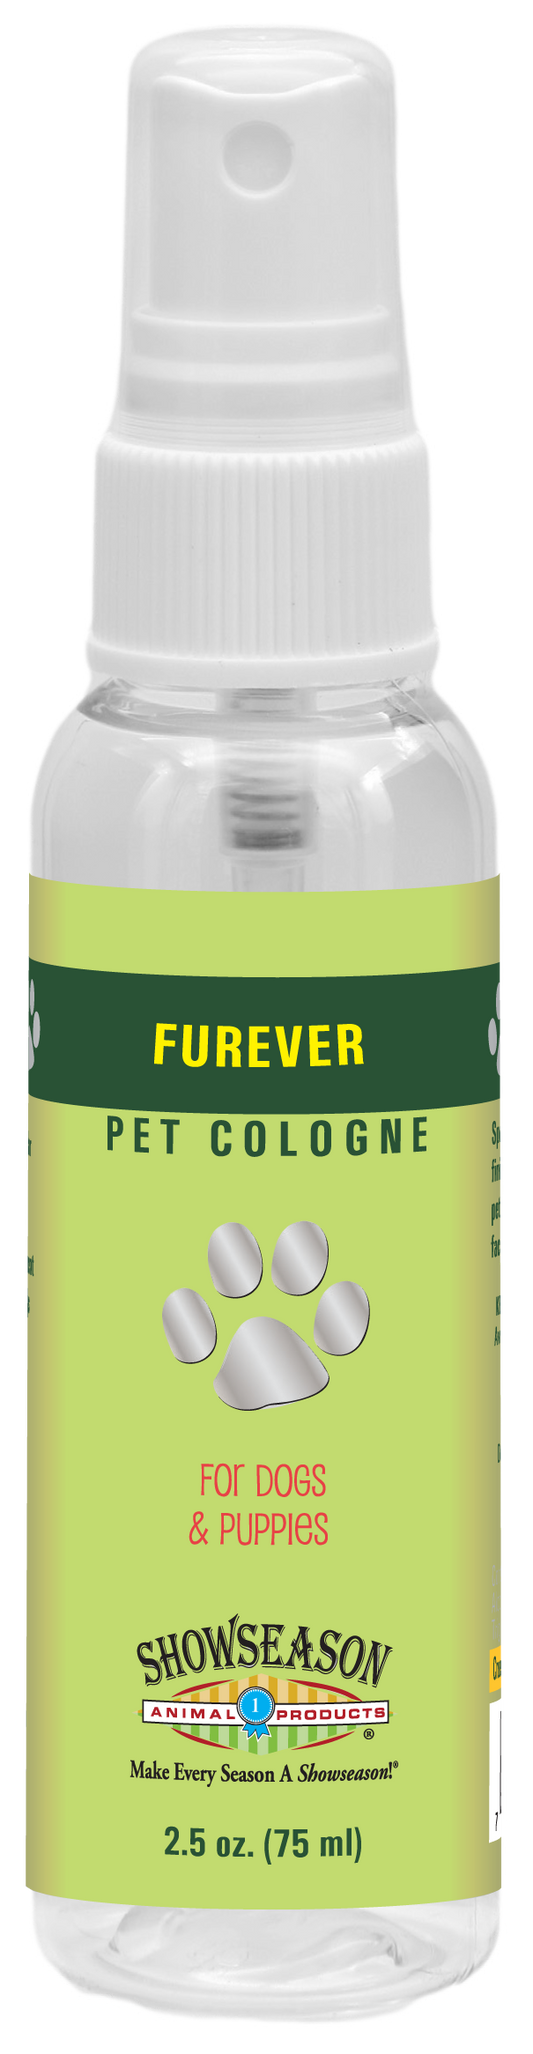 Furever Pet Cologne | Showseason®